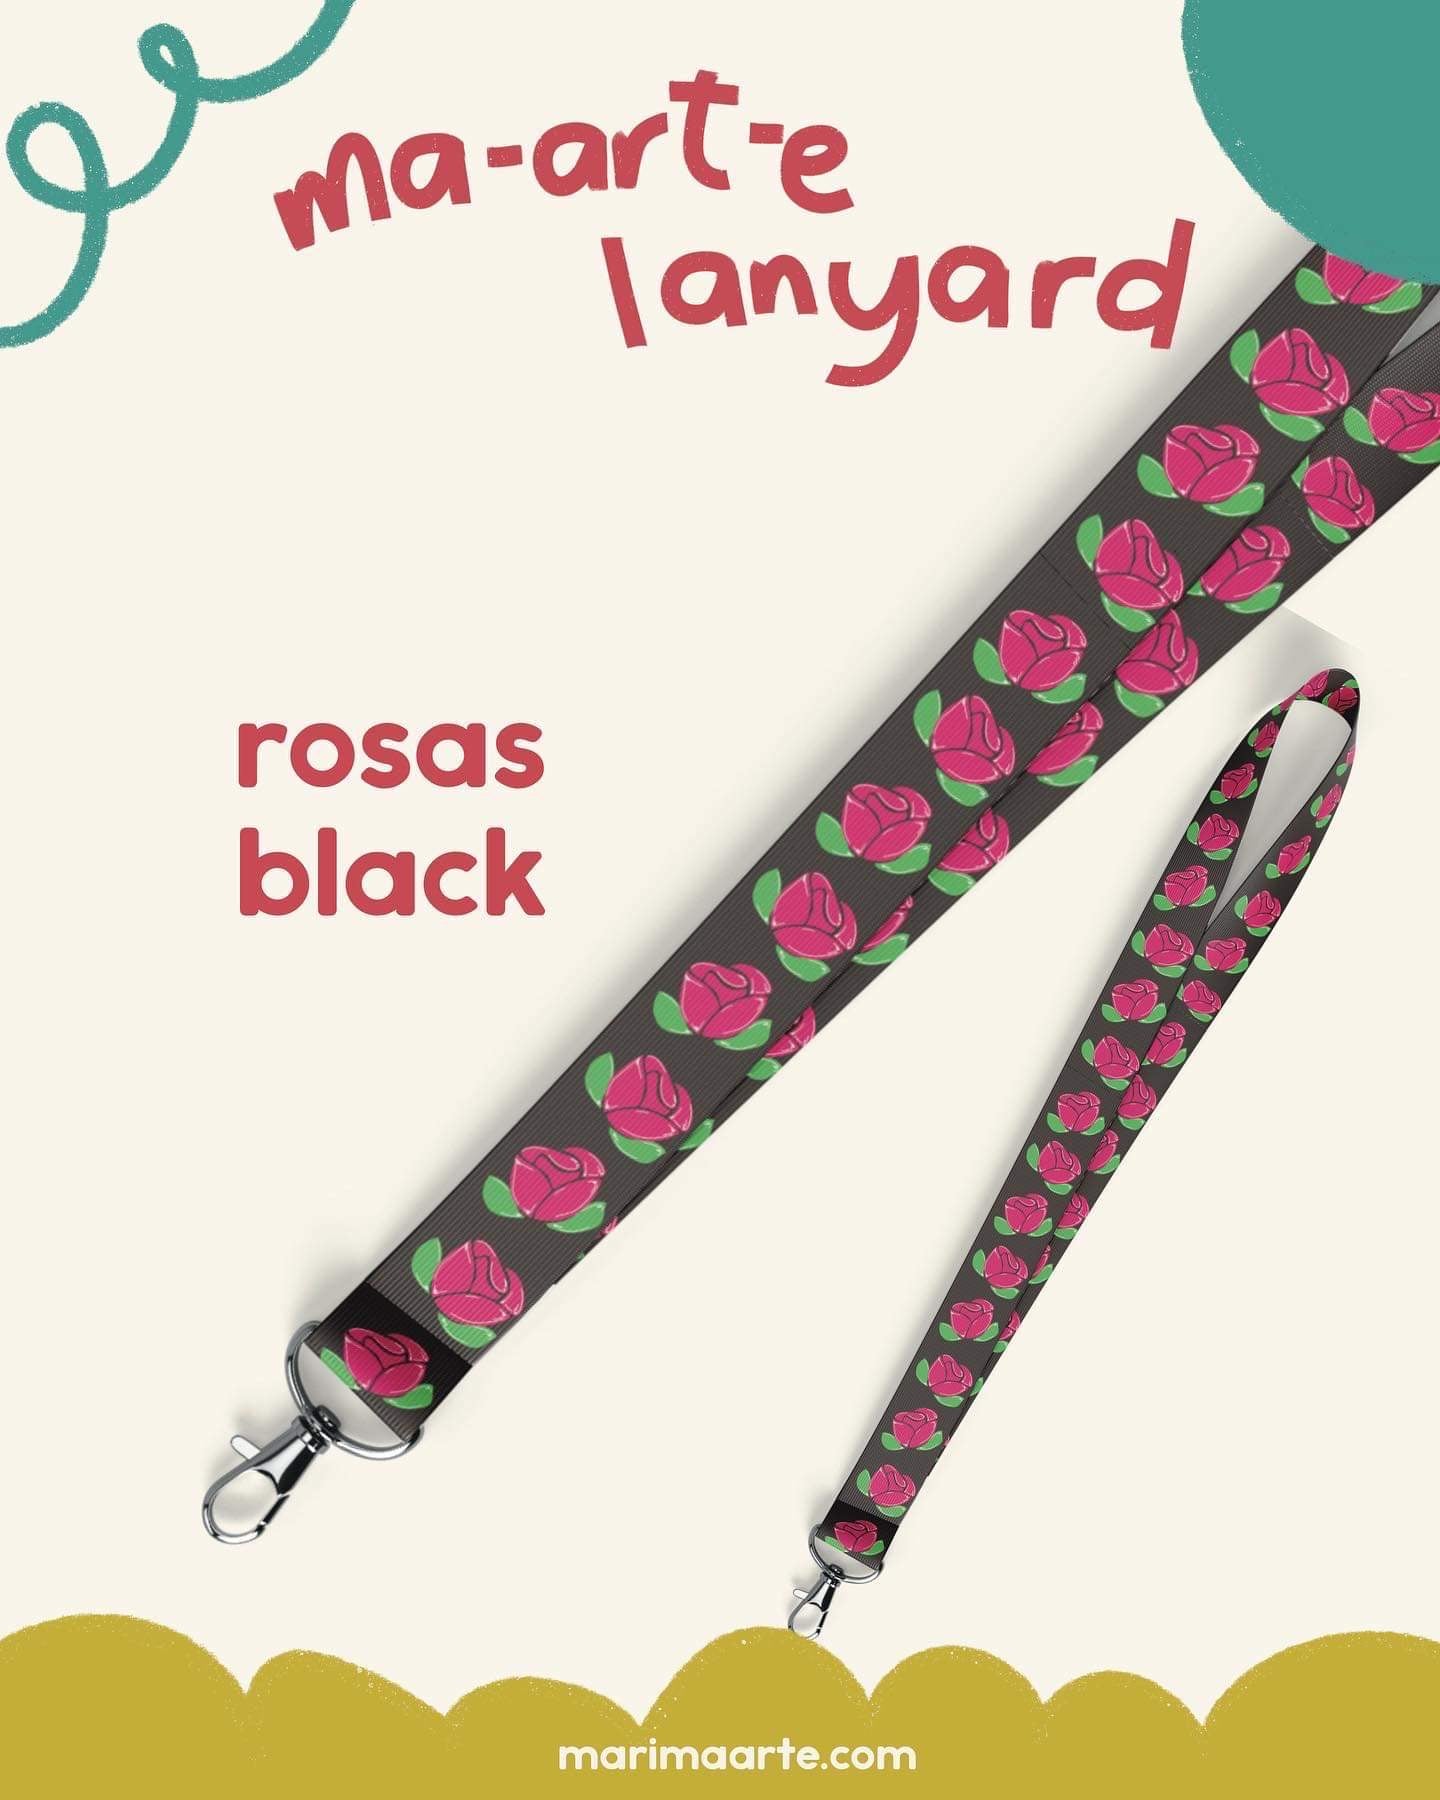 ROSAS BLACK LANYARD